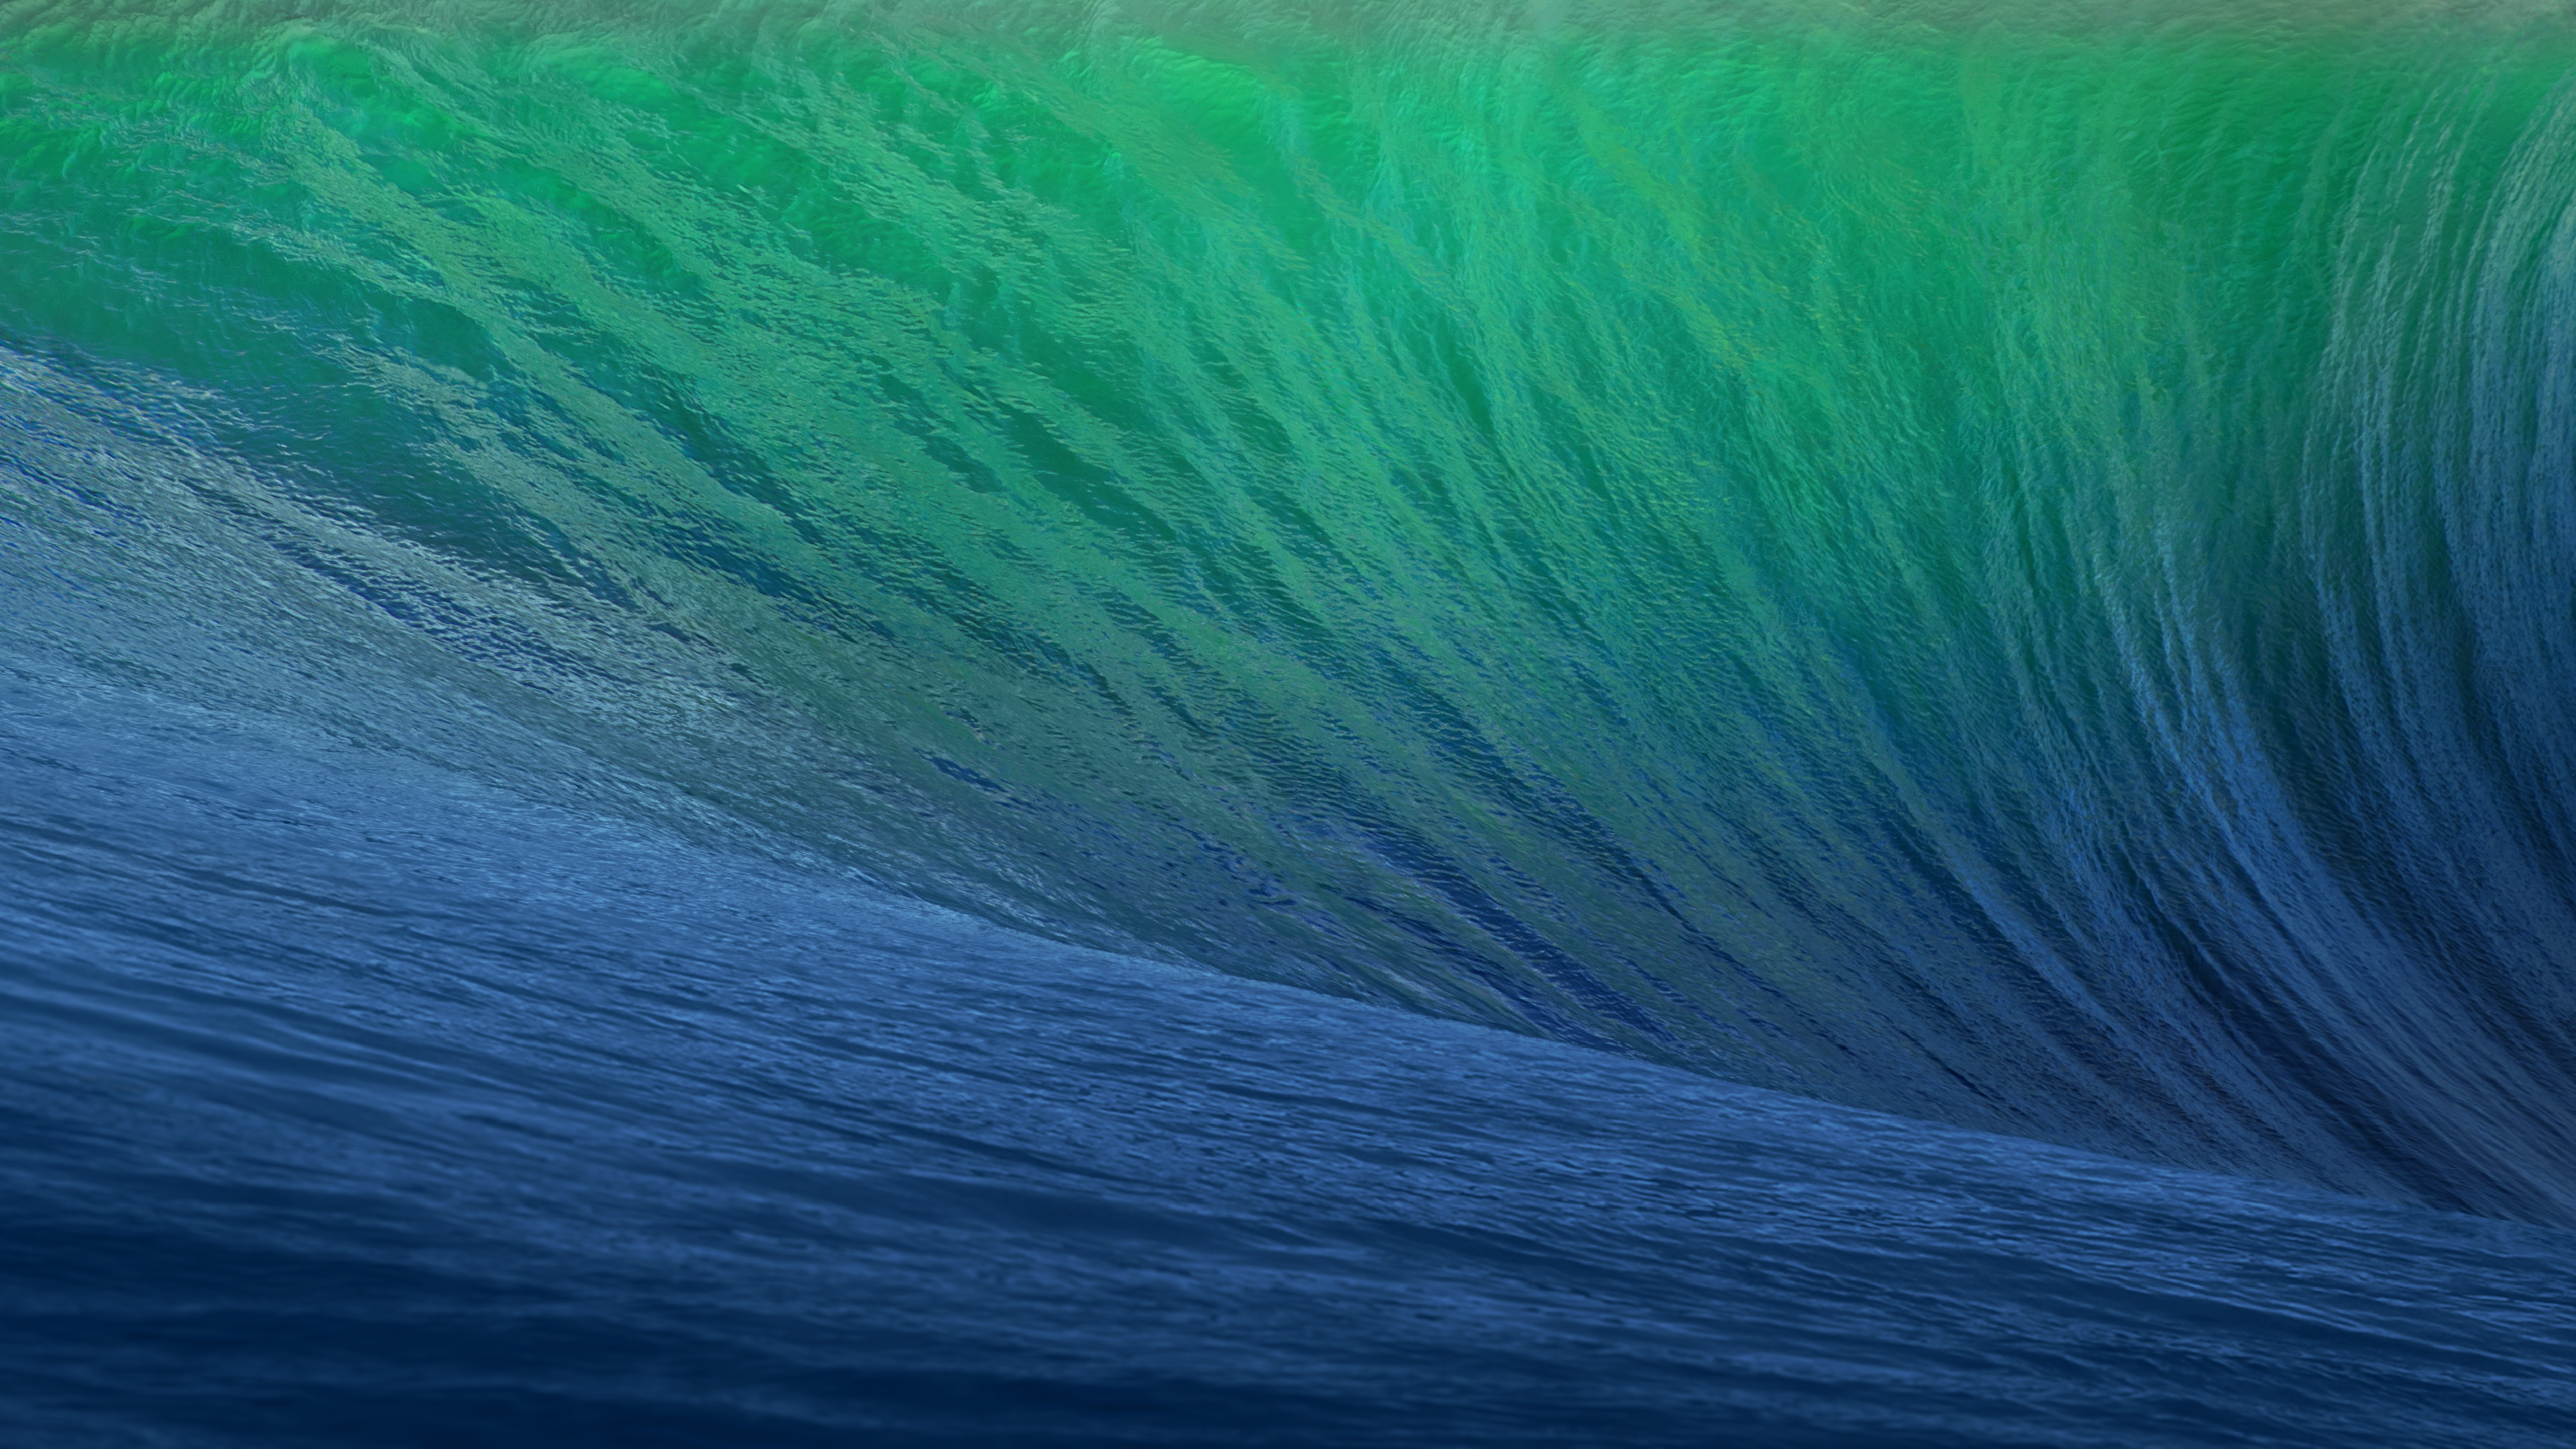 retina display wallpapers ocean